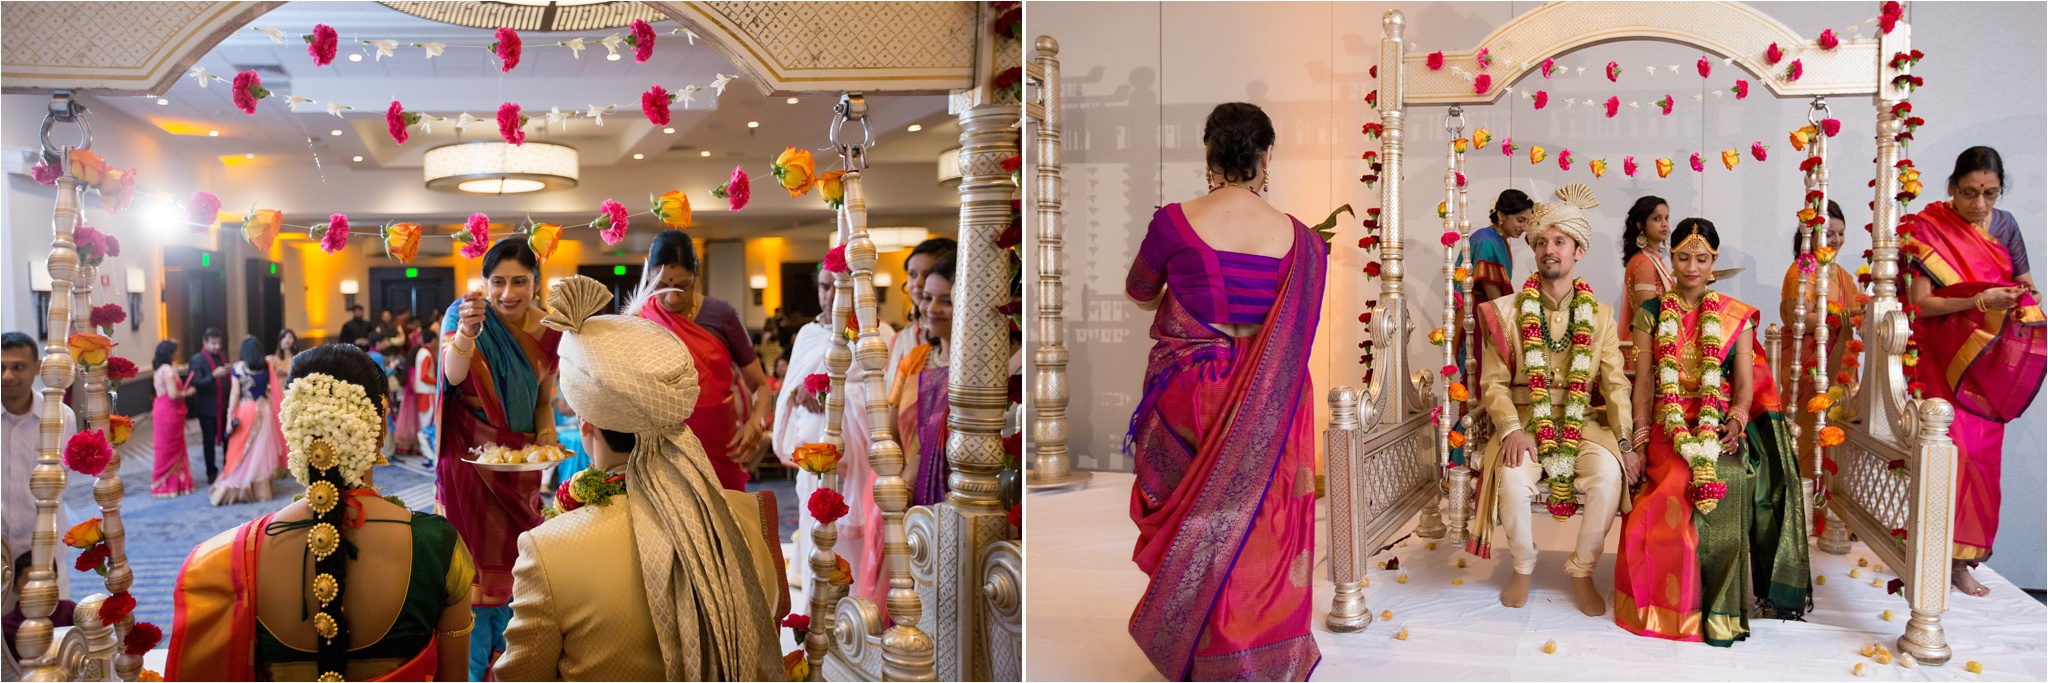 Santa_Clara_Marriott_Indian_Wedding_0025.jpg